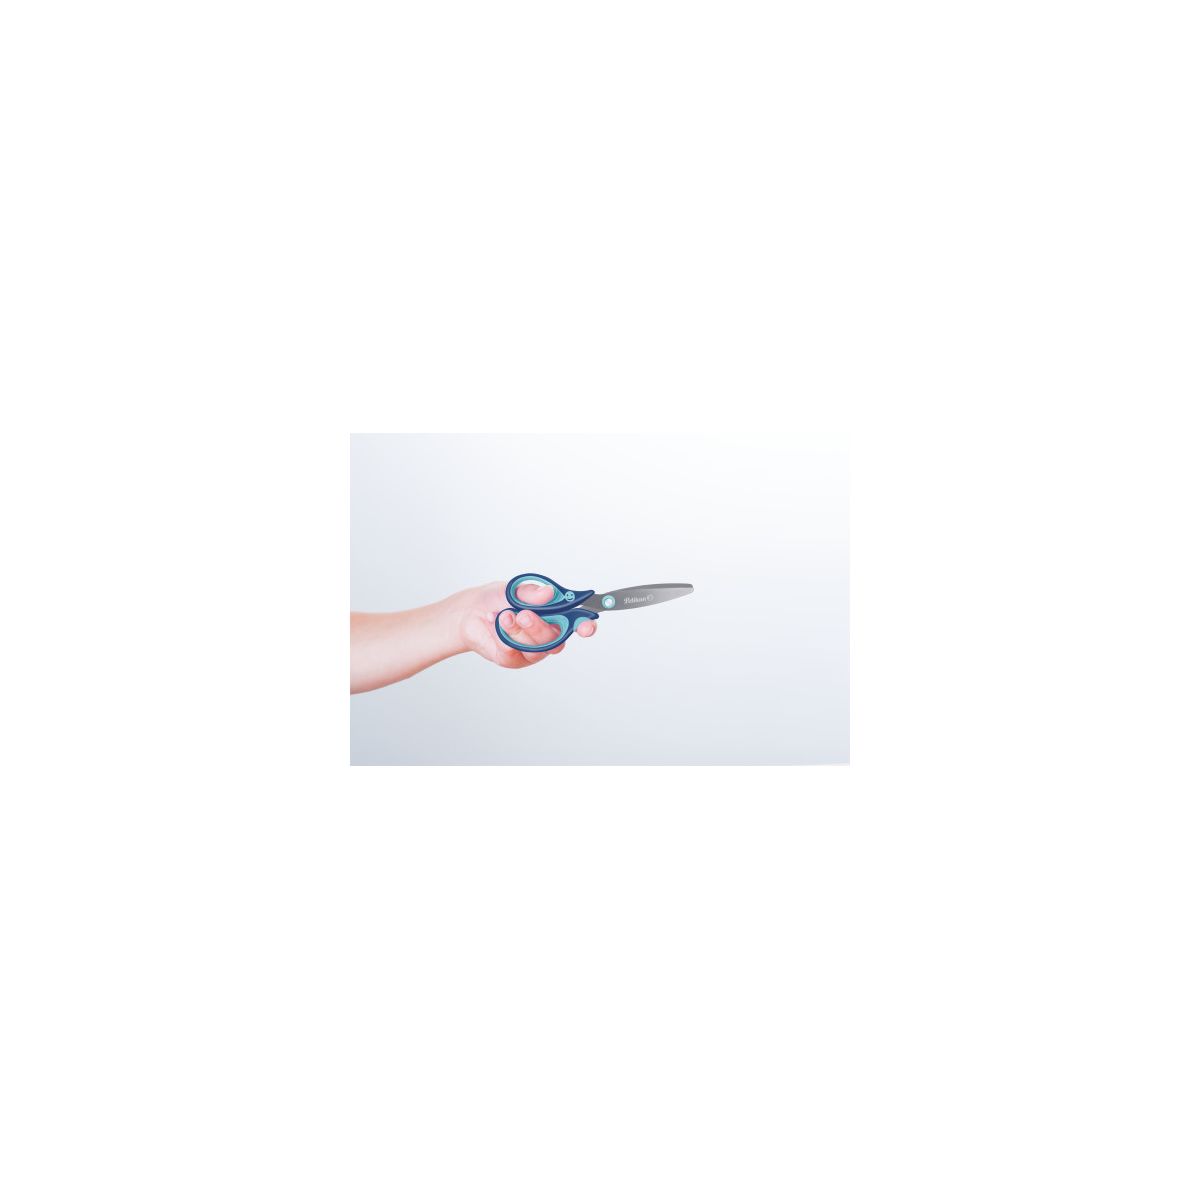 Pelikan griffix® Schulschere rund für Linkshänder, Blau